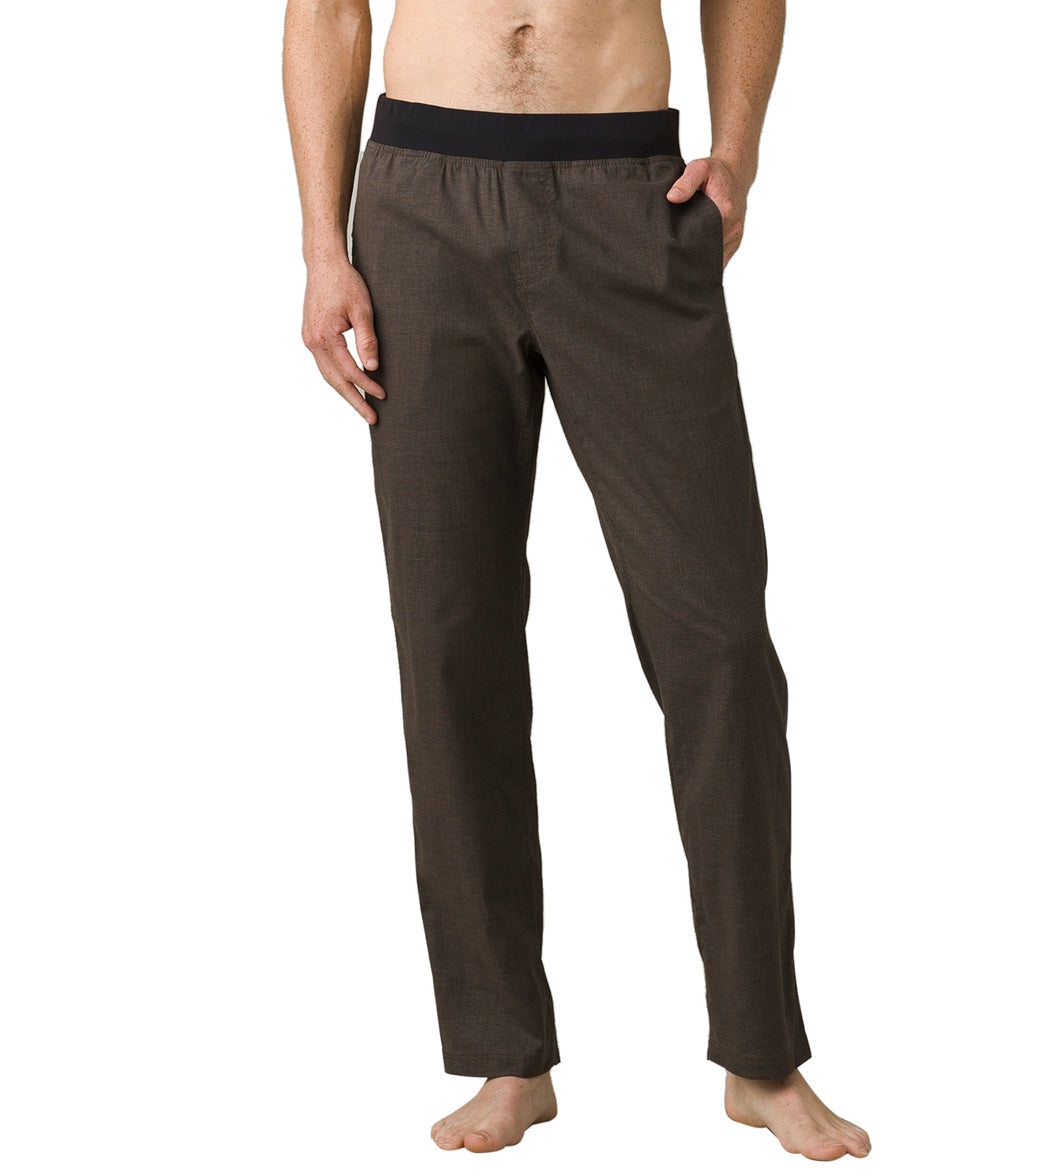 Pantalón yoga hombre (pantalón de yoga hombre) venta online